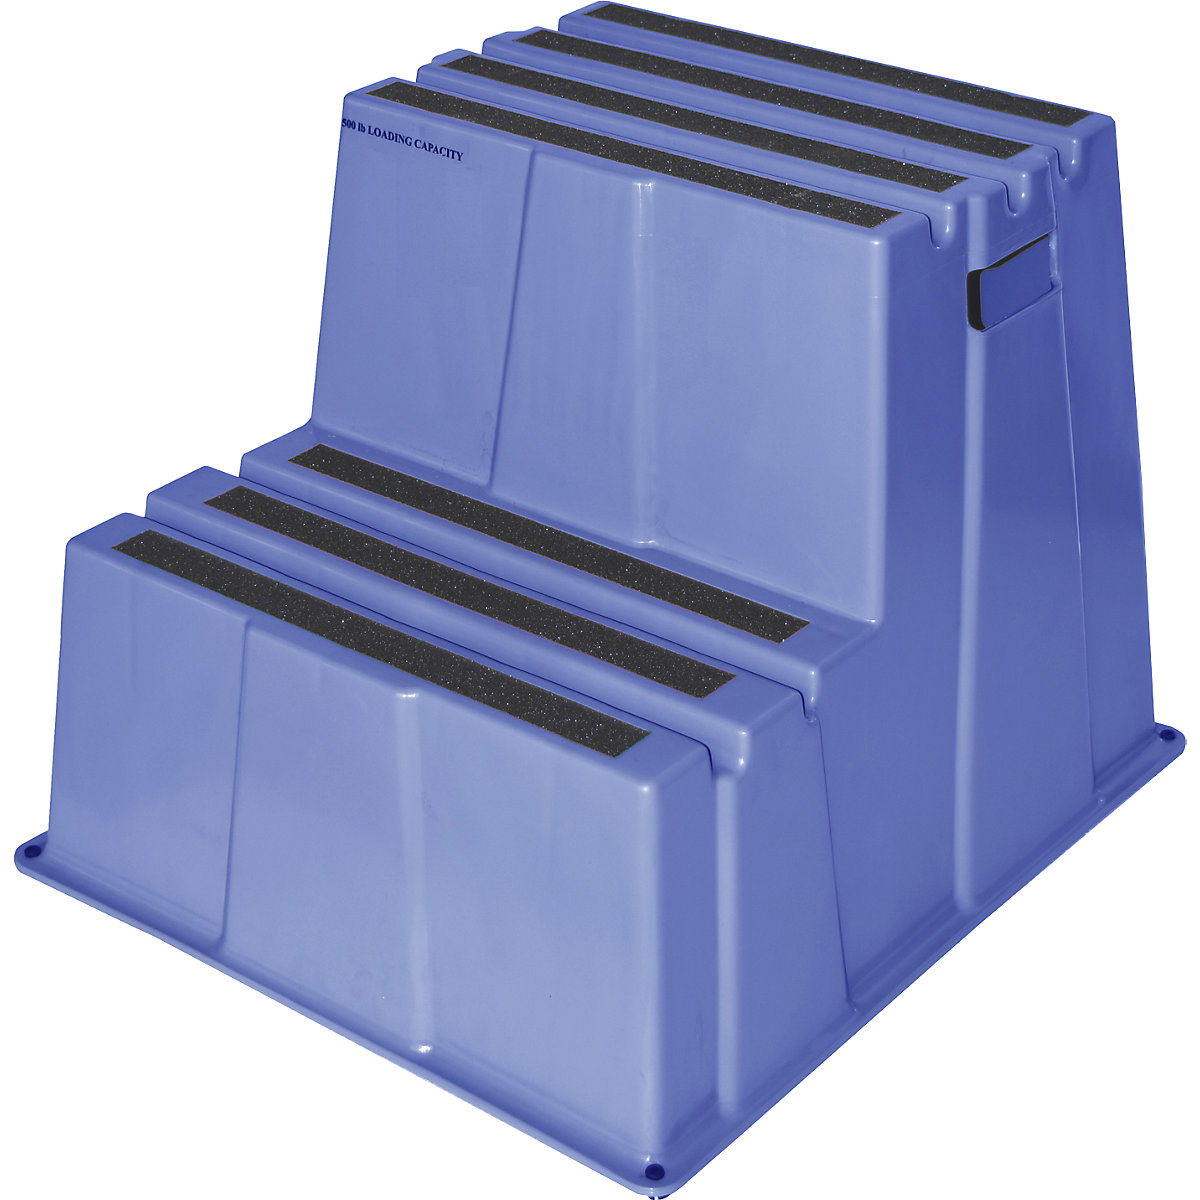 Plastične ljestve s protukliznim stepenicama – Twinco, nosivost 150 kg, 2 stepenice, u plavoj boji-1